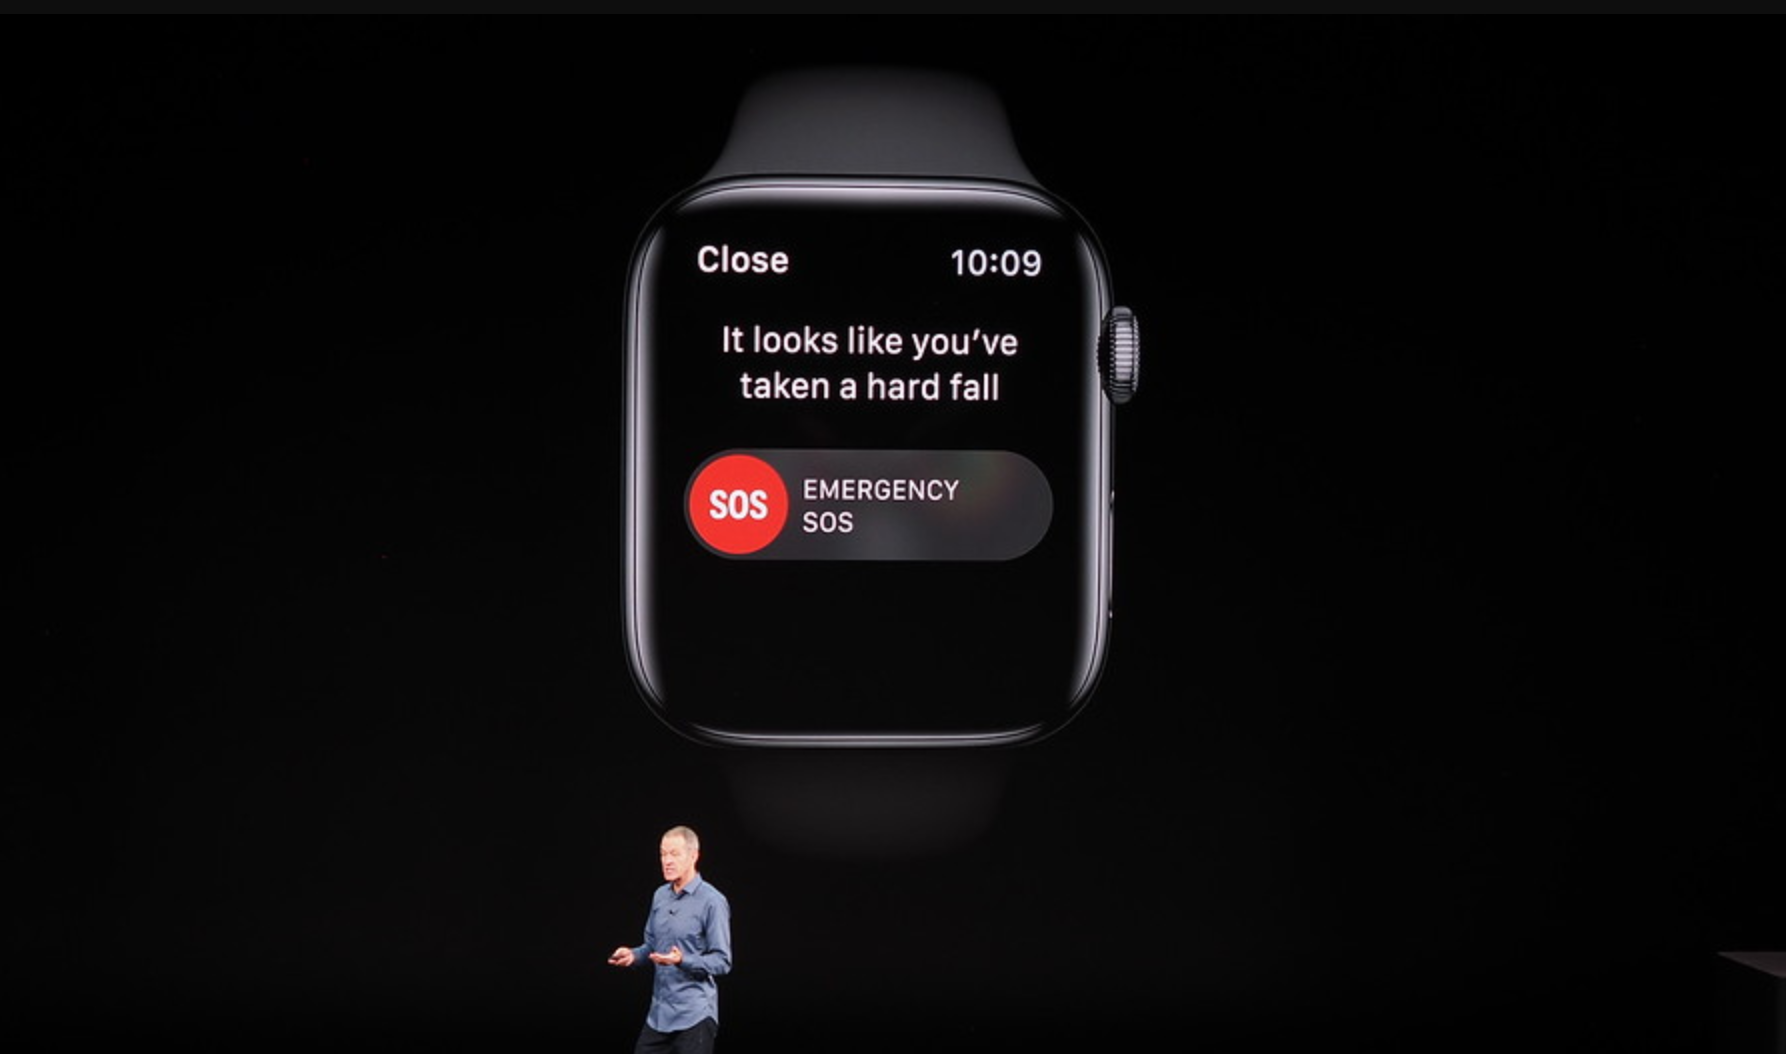 ميزة إكتشاف السقوط في Apple Watch تطلب خدمة الطوارئ نيابة عن مستخدمها الفاقد للوعي